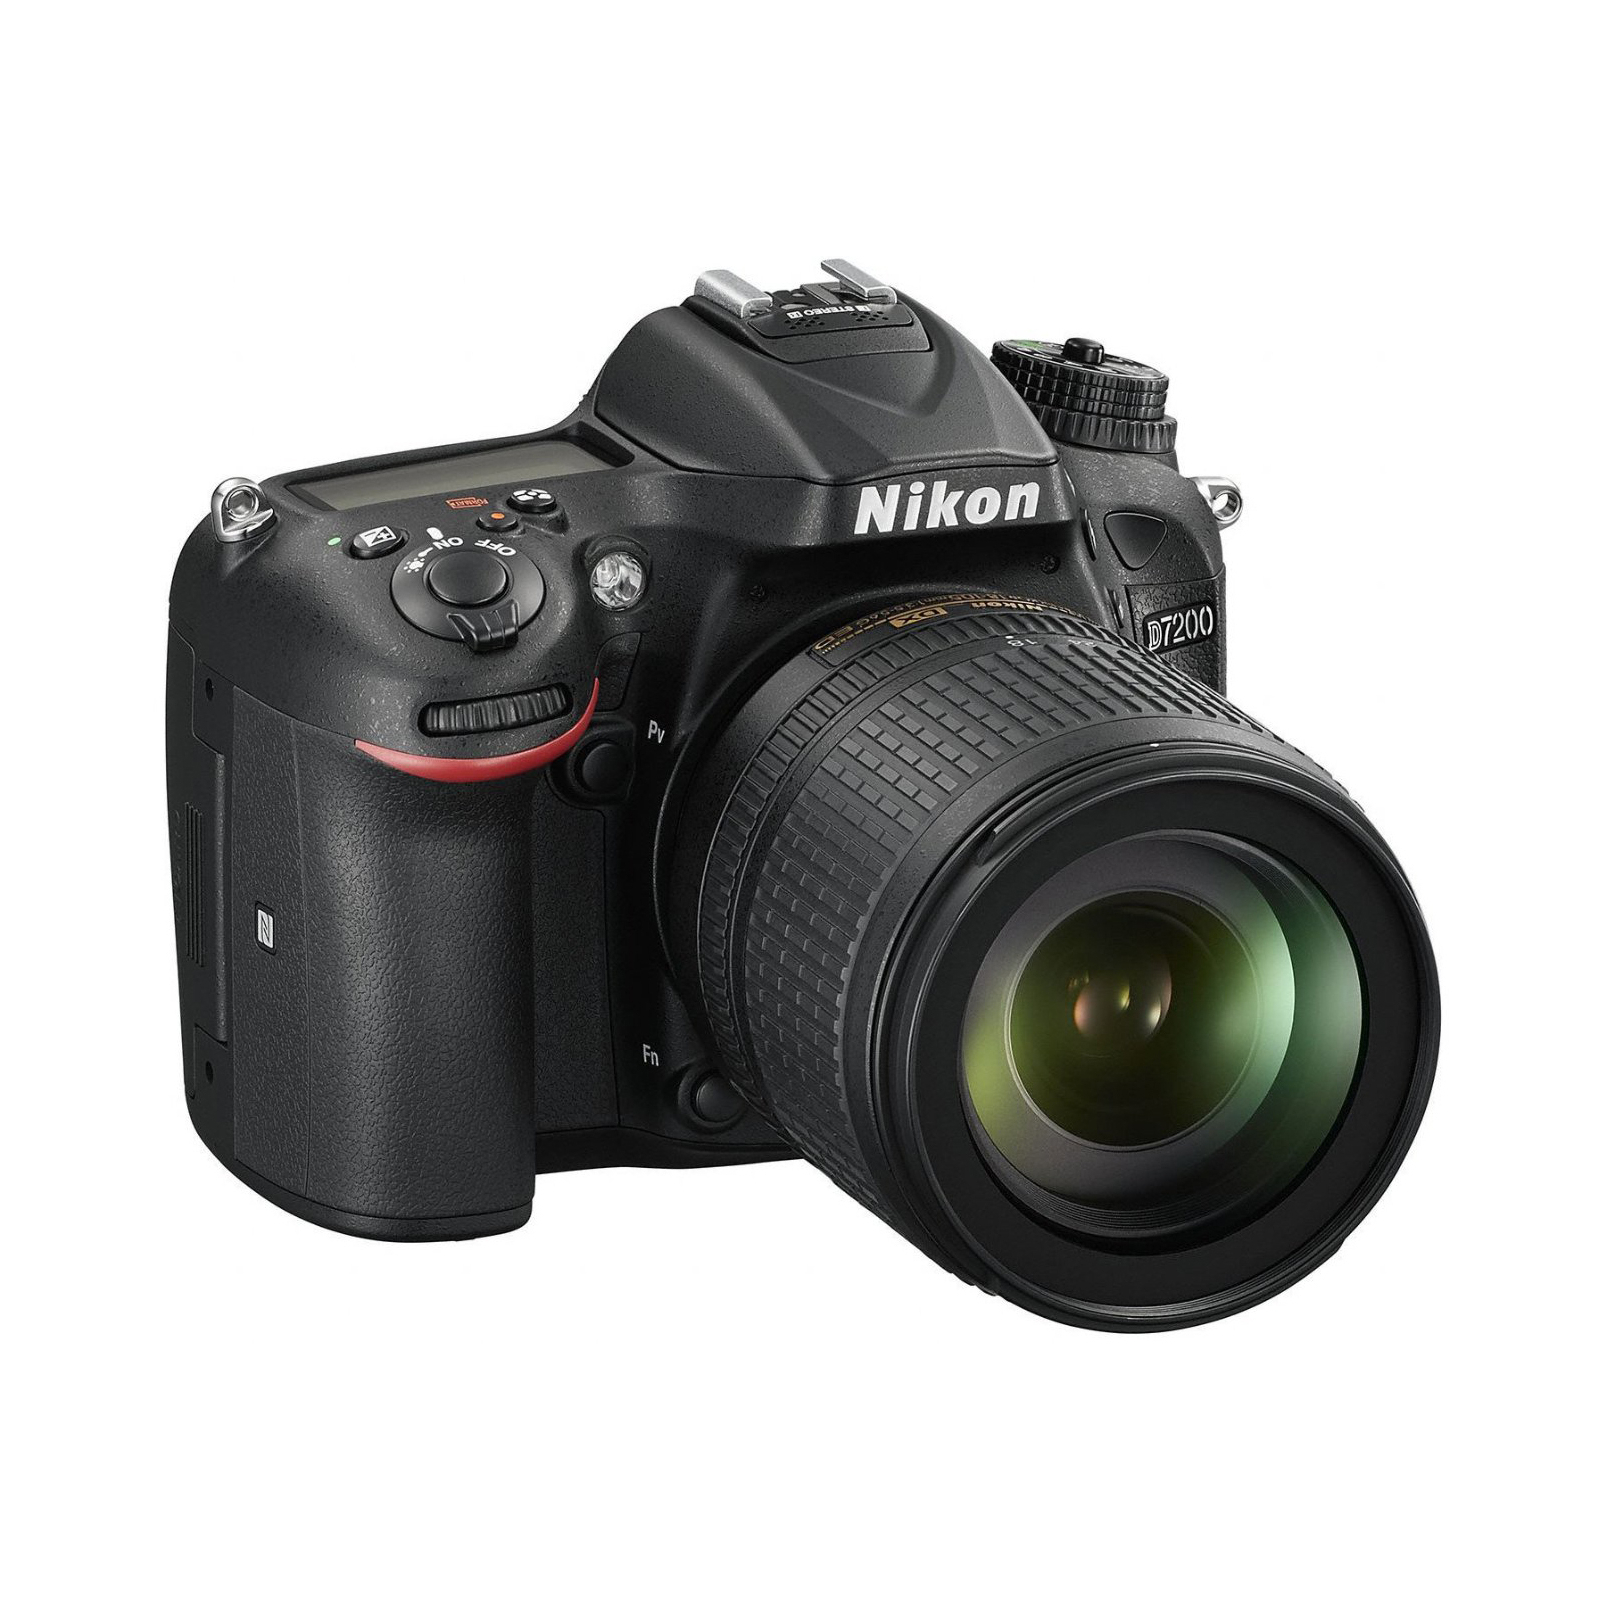 Цифровой фотоаппарат Nikon D7200 AF-S DX 18-105 Kit (VBA450K001) изображение 7